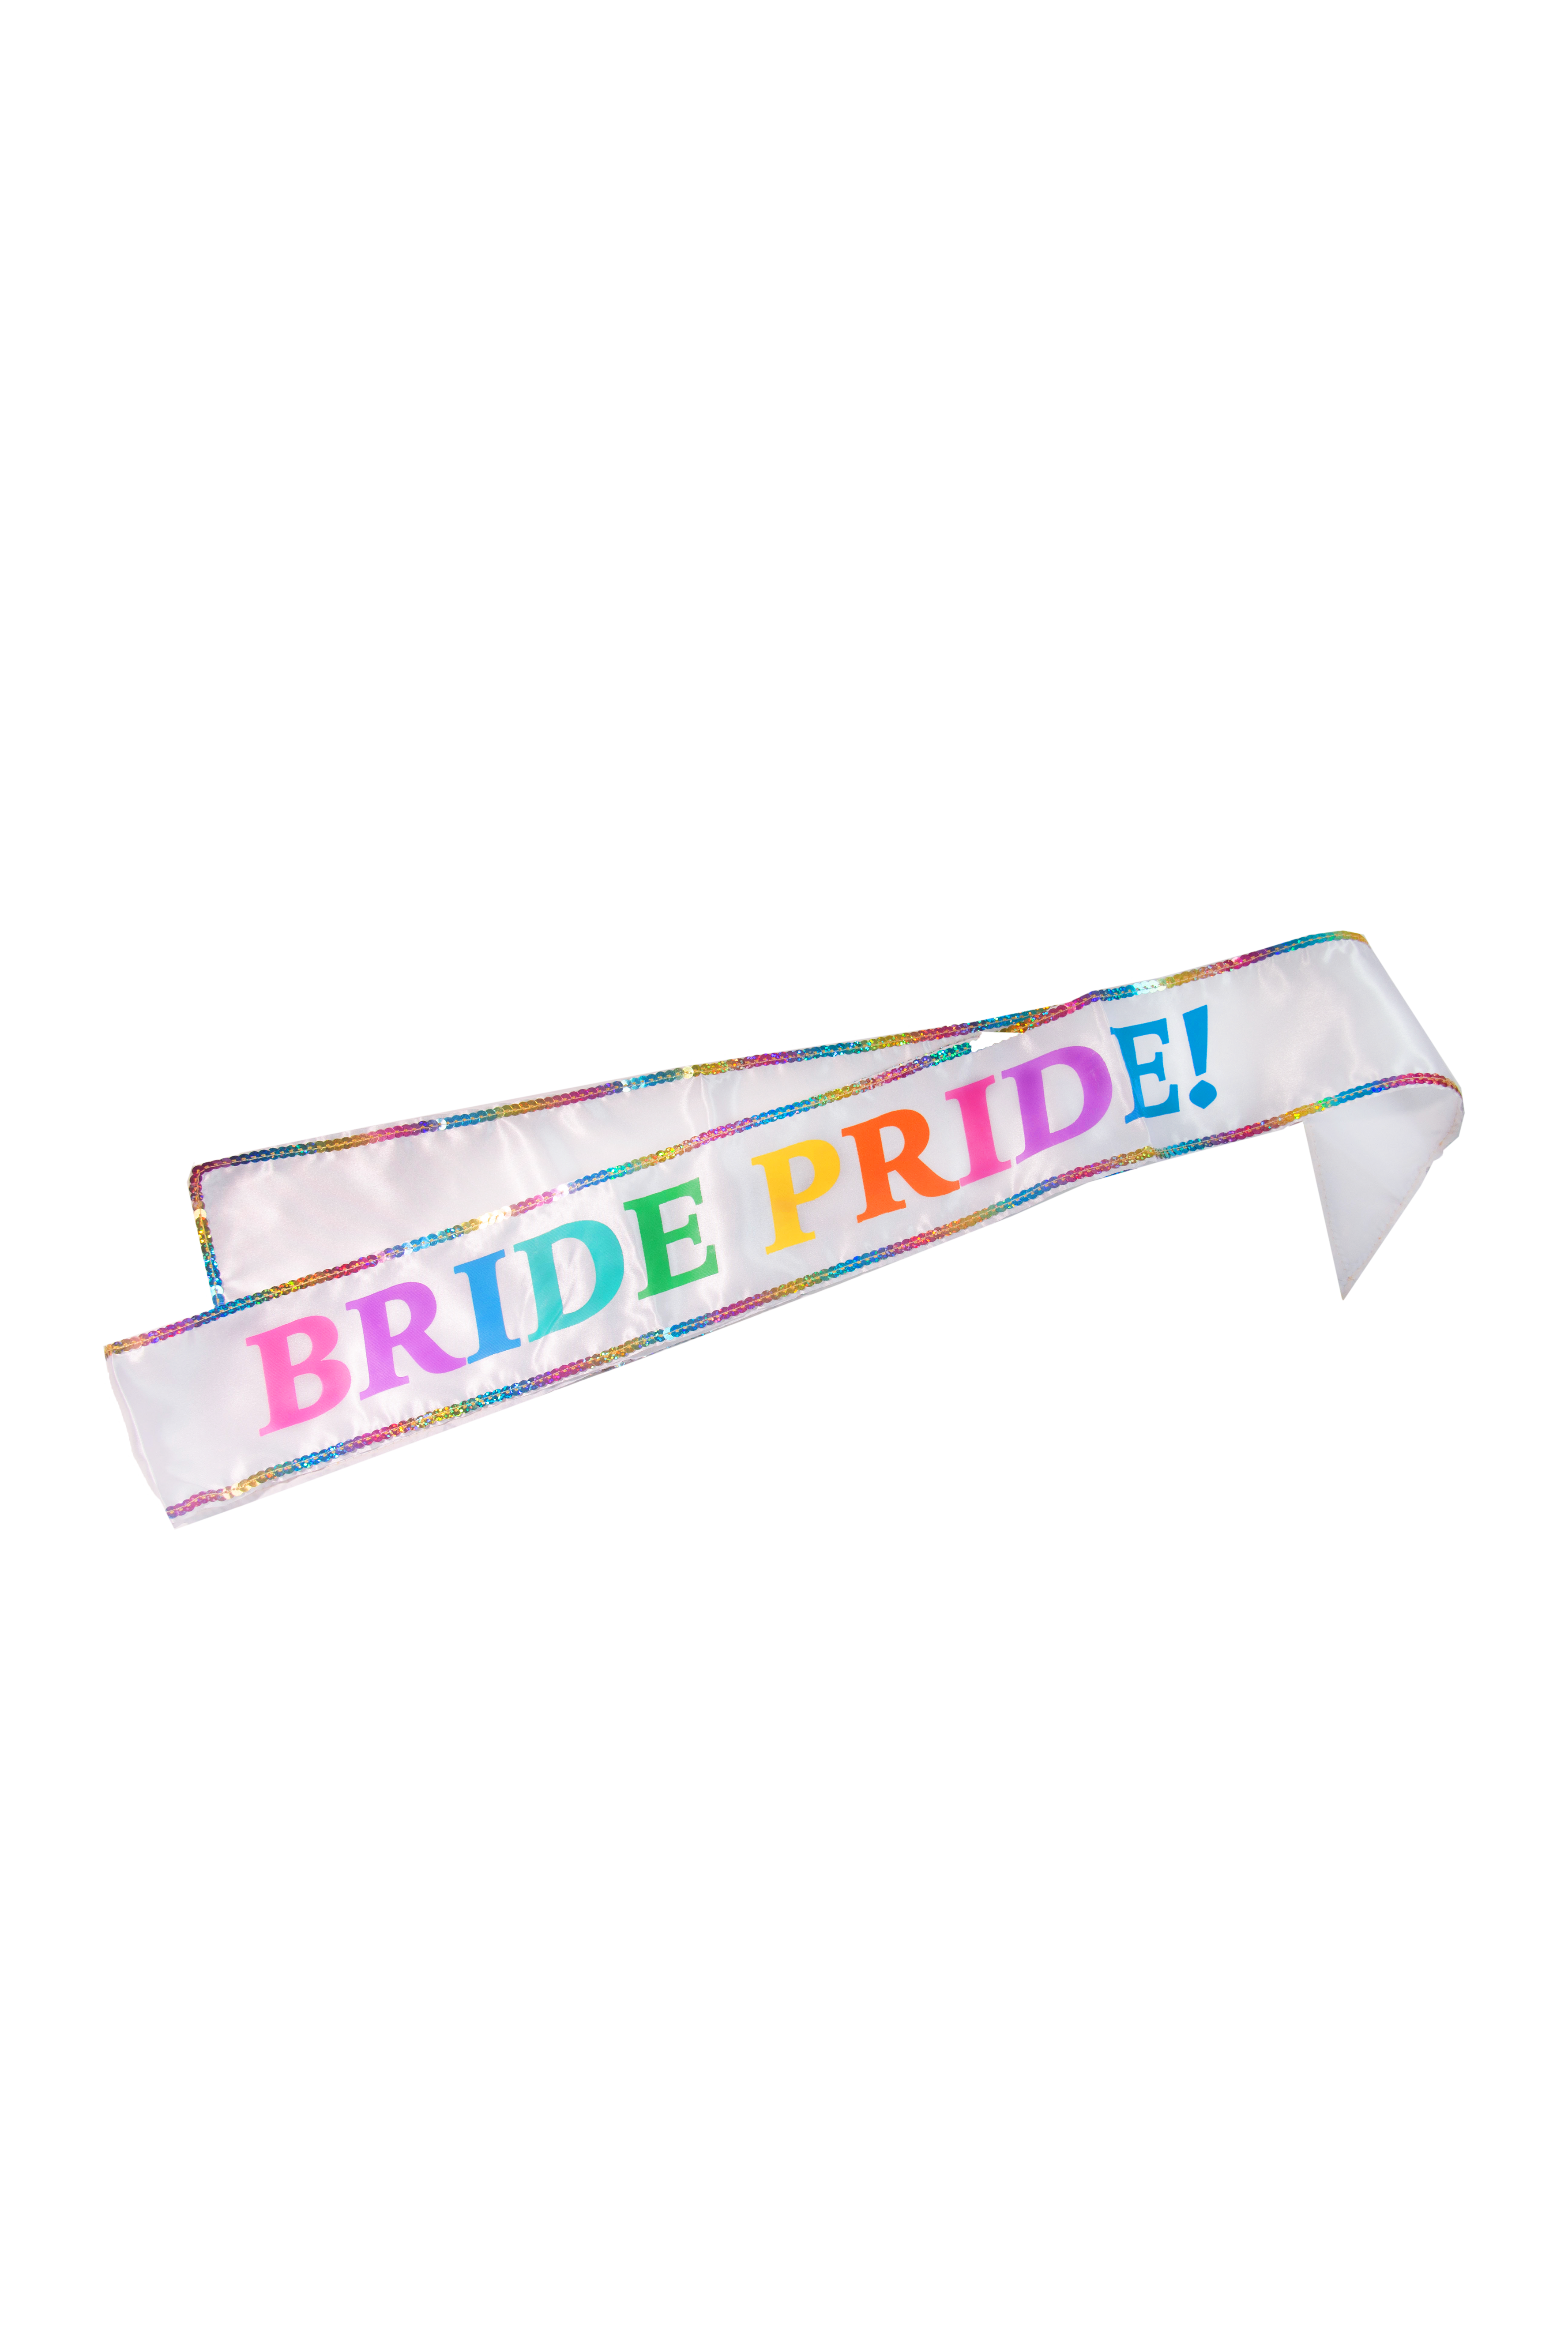 &quot;Bride Pride&quot; Sash